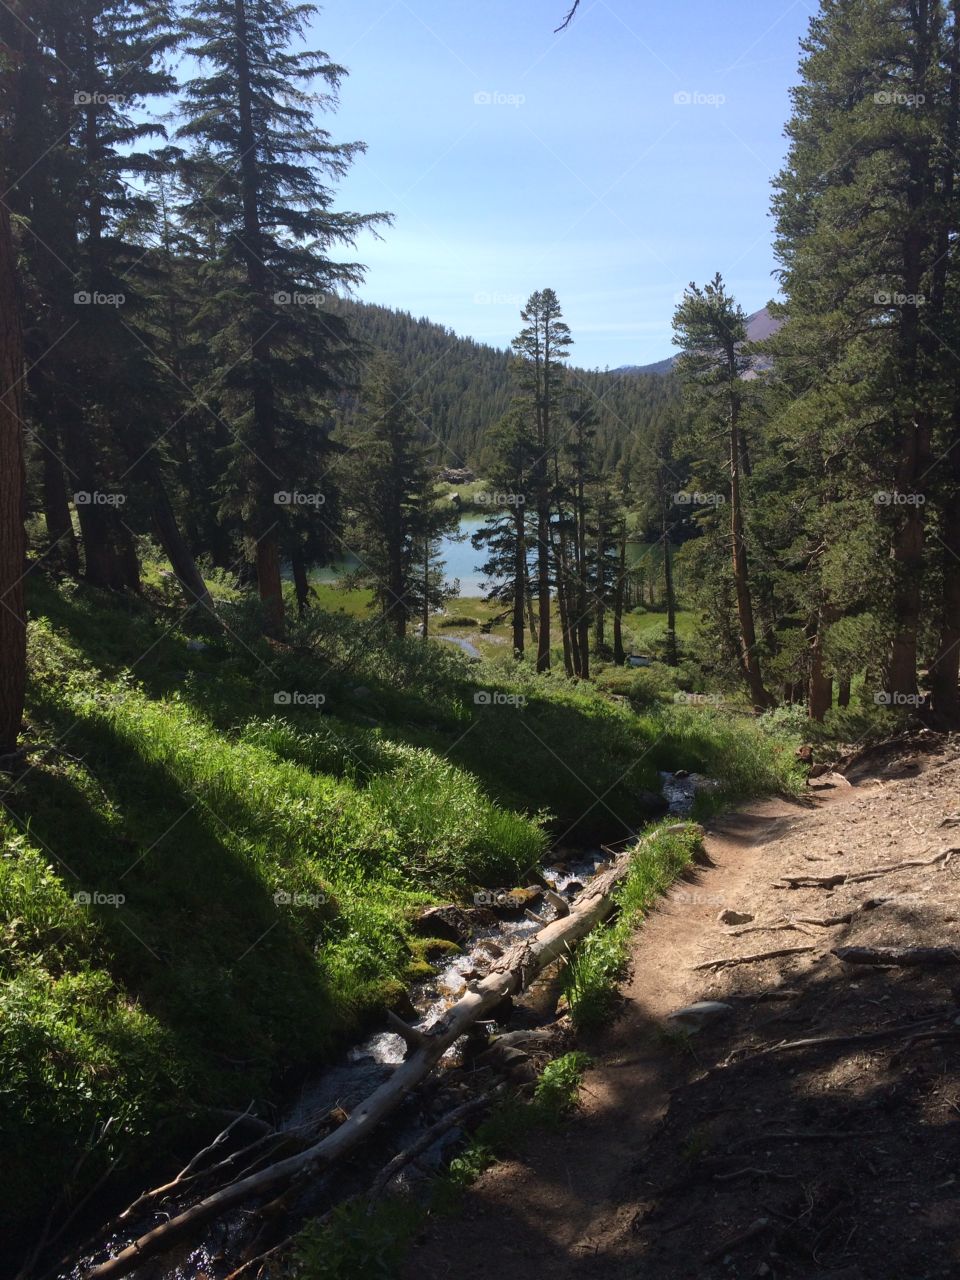 Lake trail